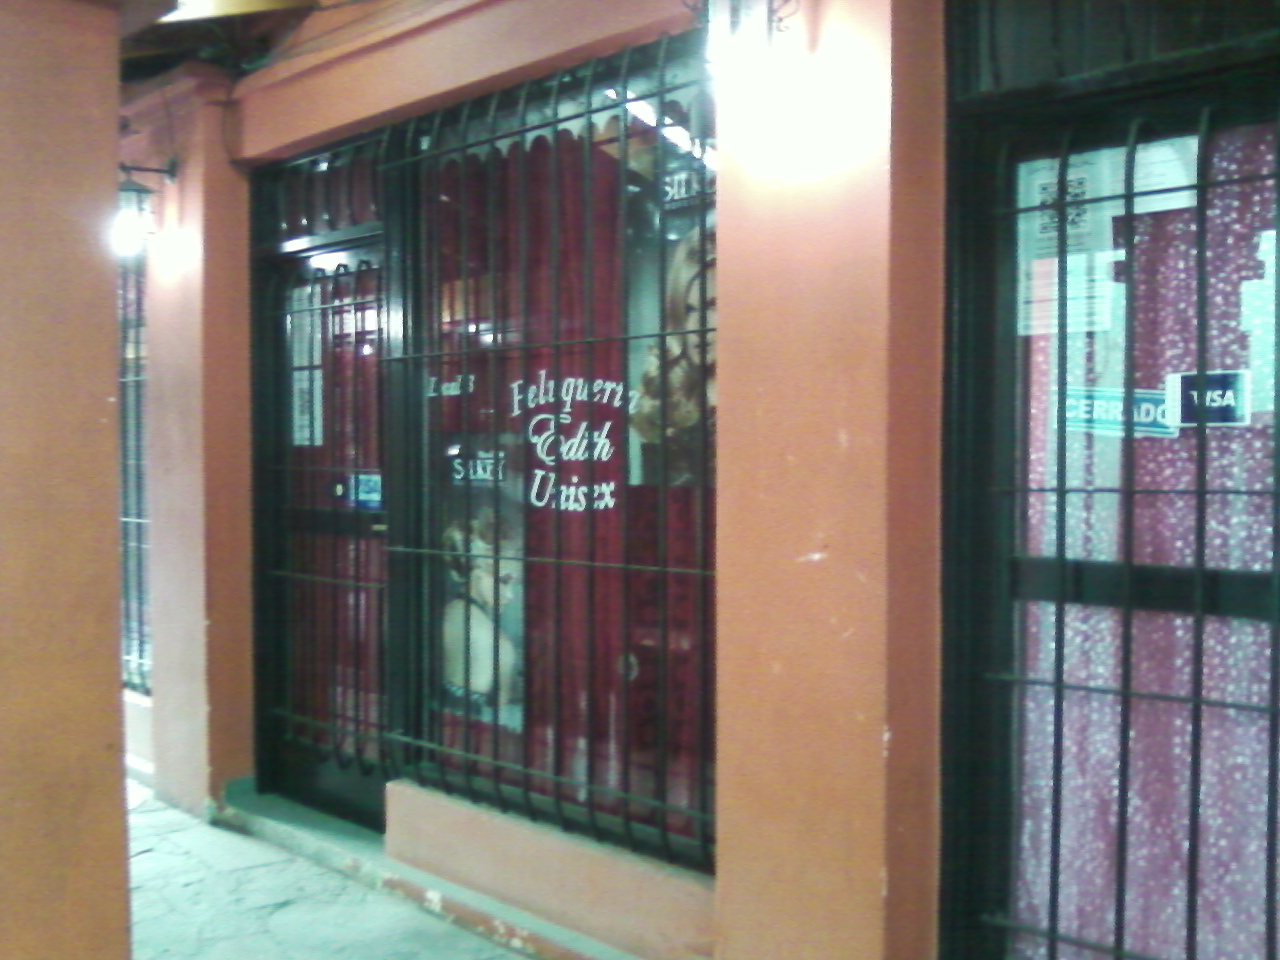 Local comercial en Galería La Reja a metros de estación Glew, MUY BUENA ZONA COMERCIAL.